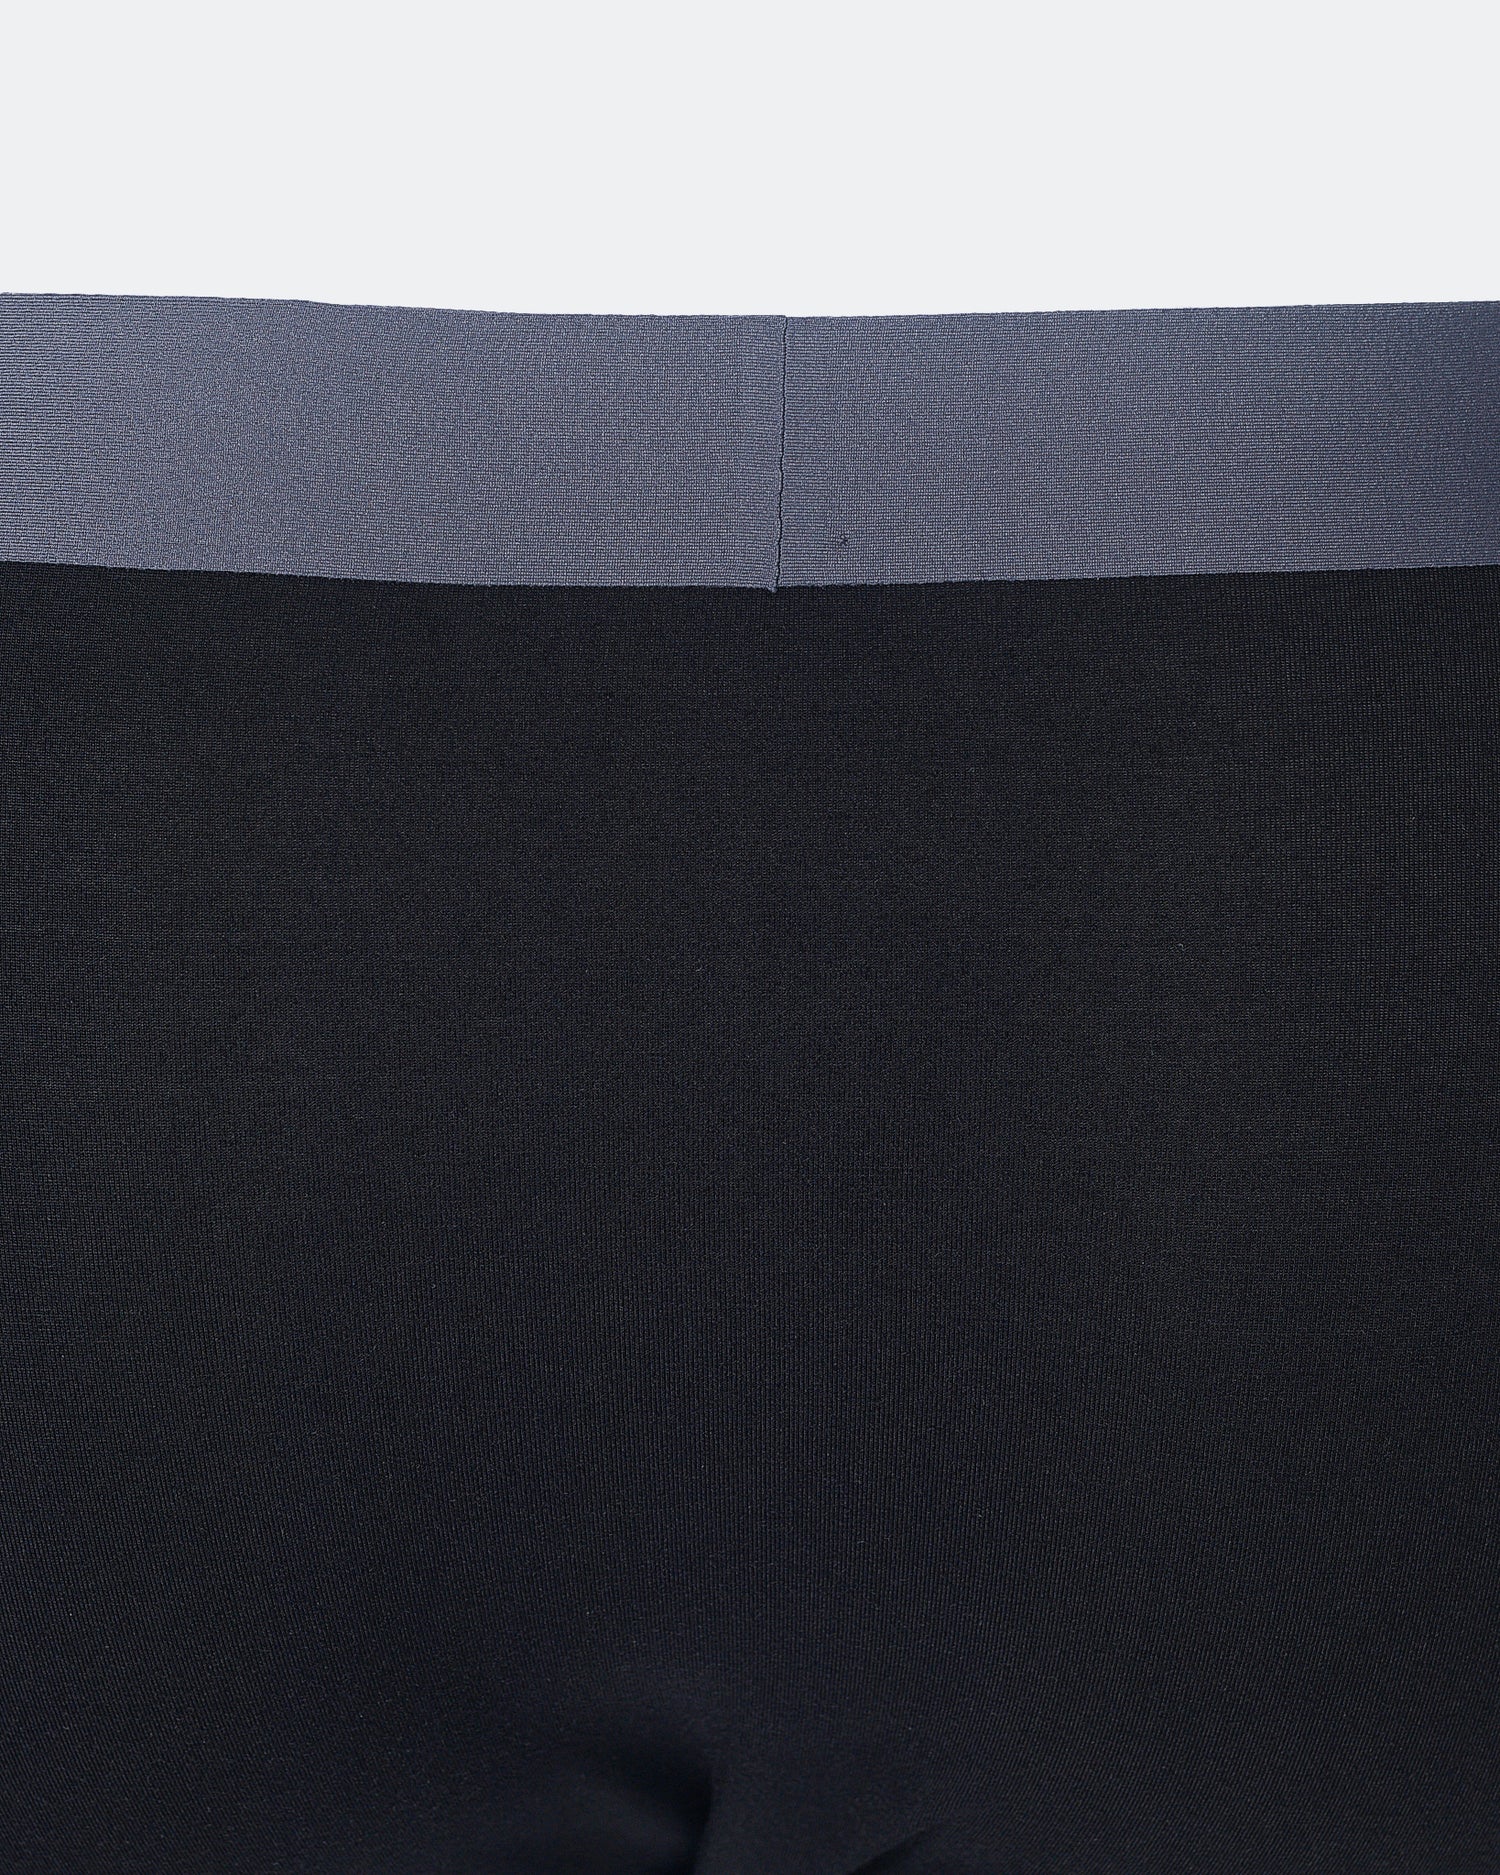 ARM EA7 Logo Printed Men Black Underwear 7.50